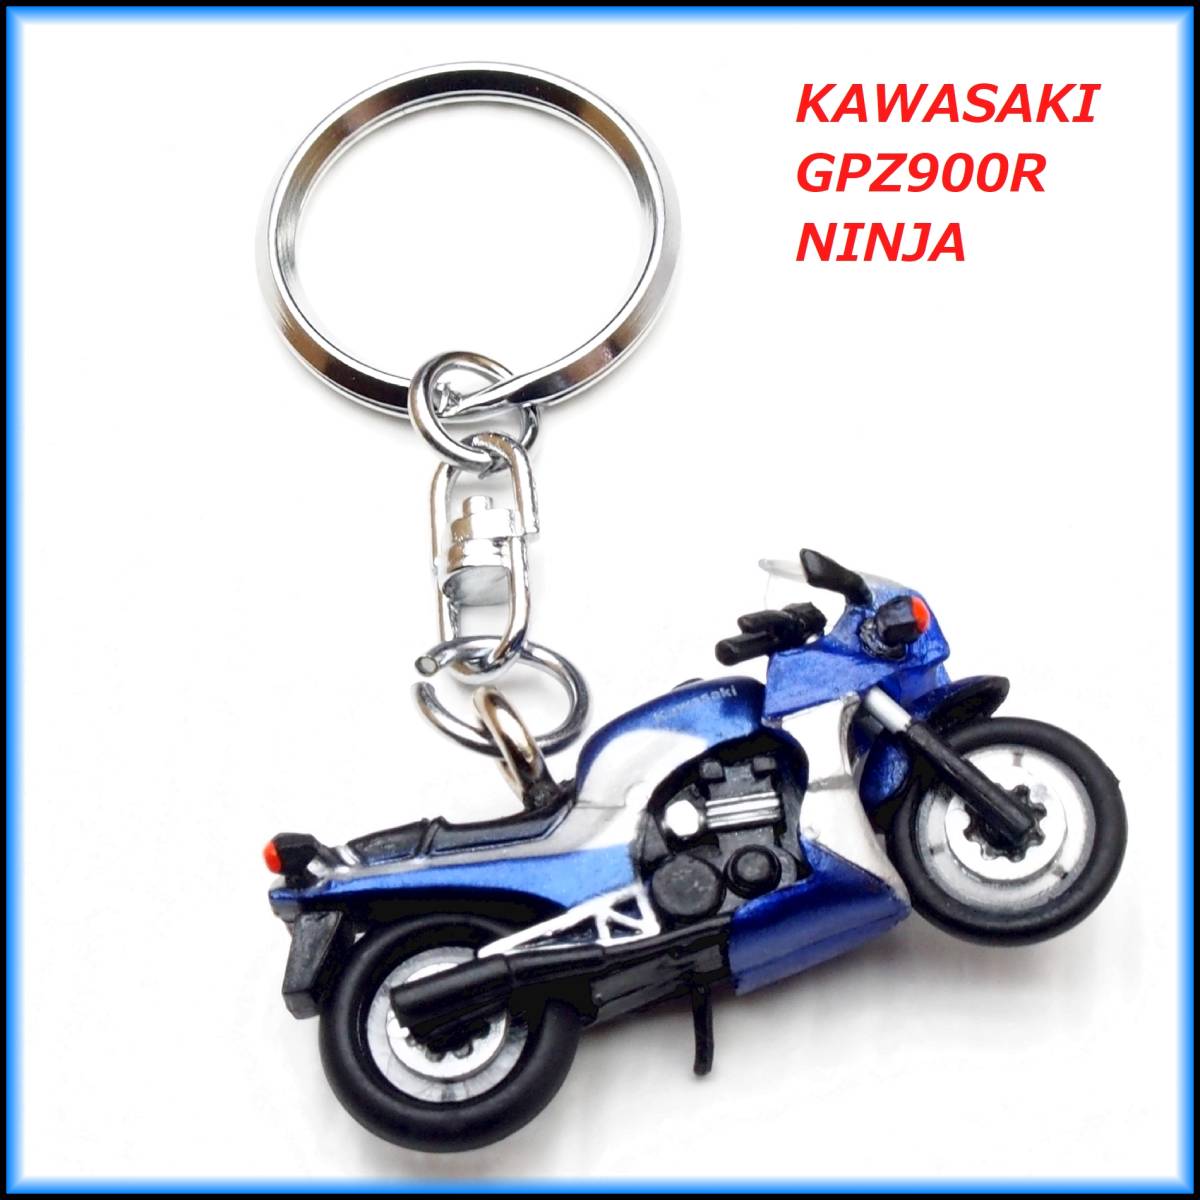 カワサキ GPZ900R Ninja バイク ストラップ キーホルダー マフラー ホイール カウル シート サス ショック タンク ミラー ハンドル_画像5